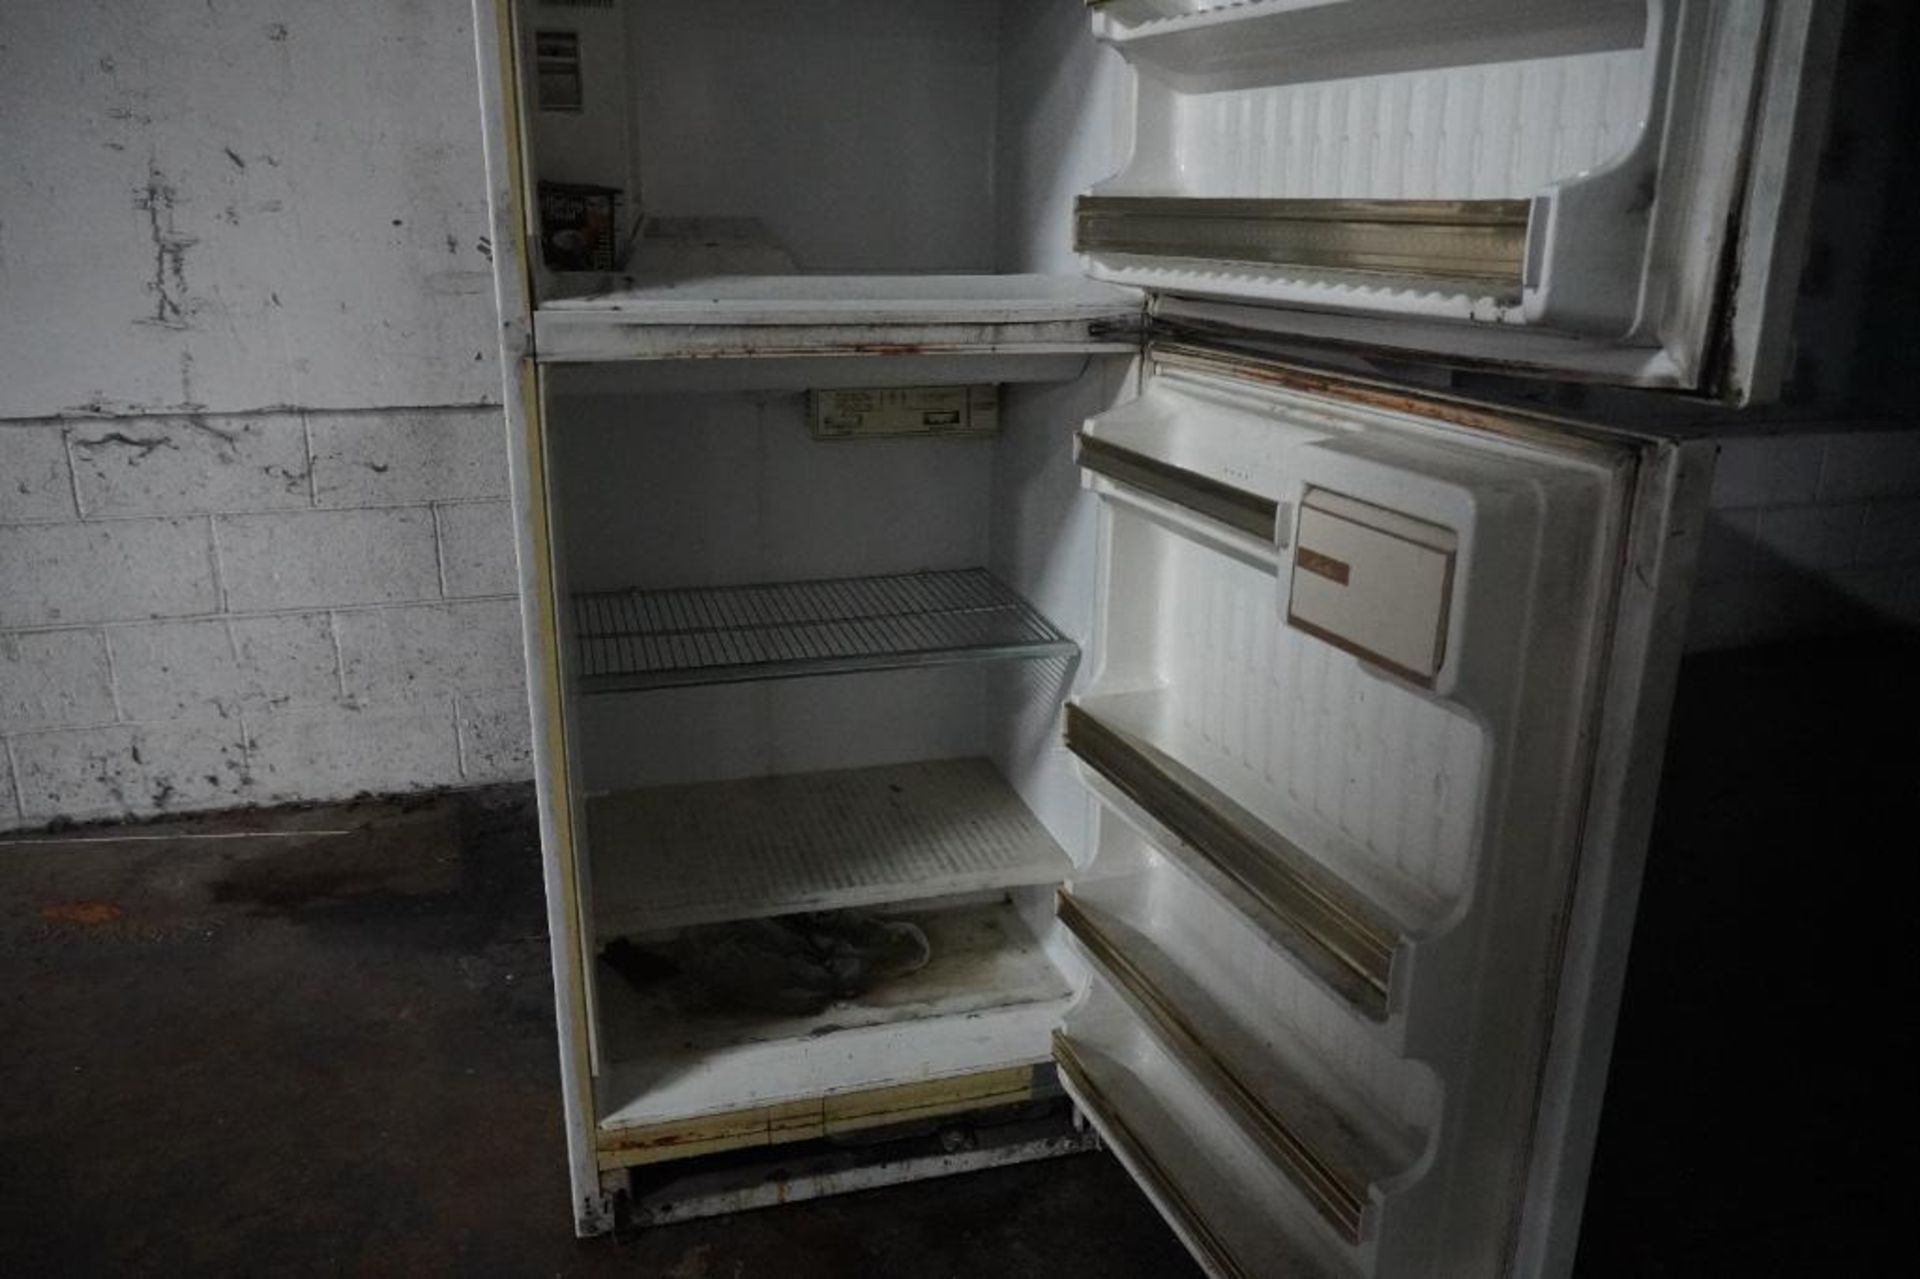 Refrigerator - Image 5 of 5